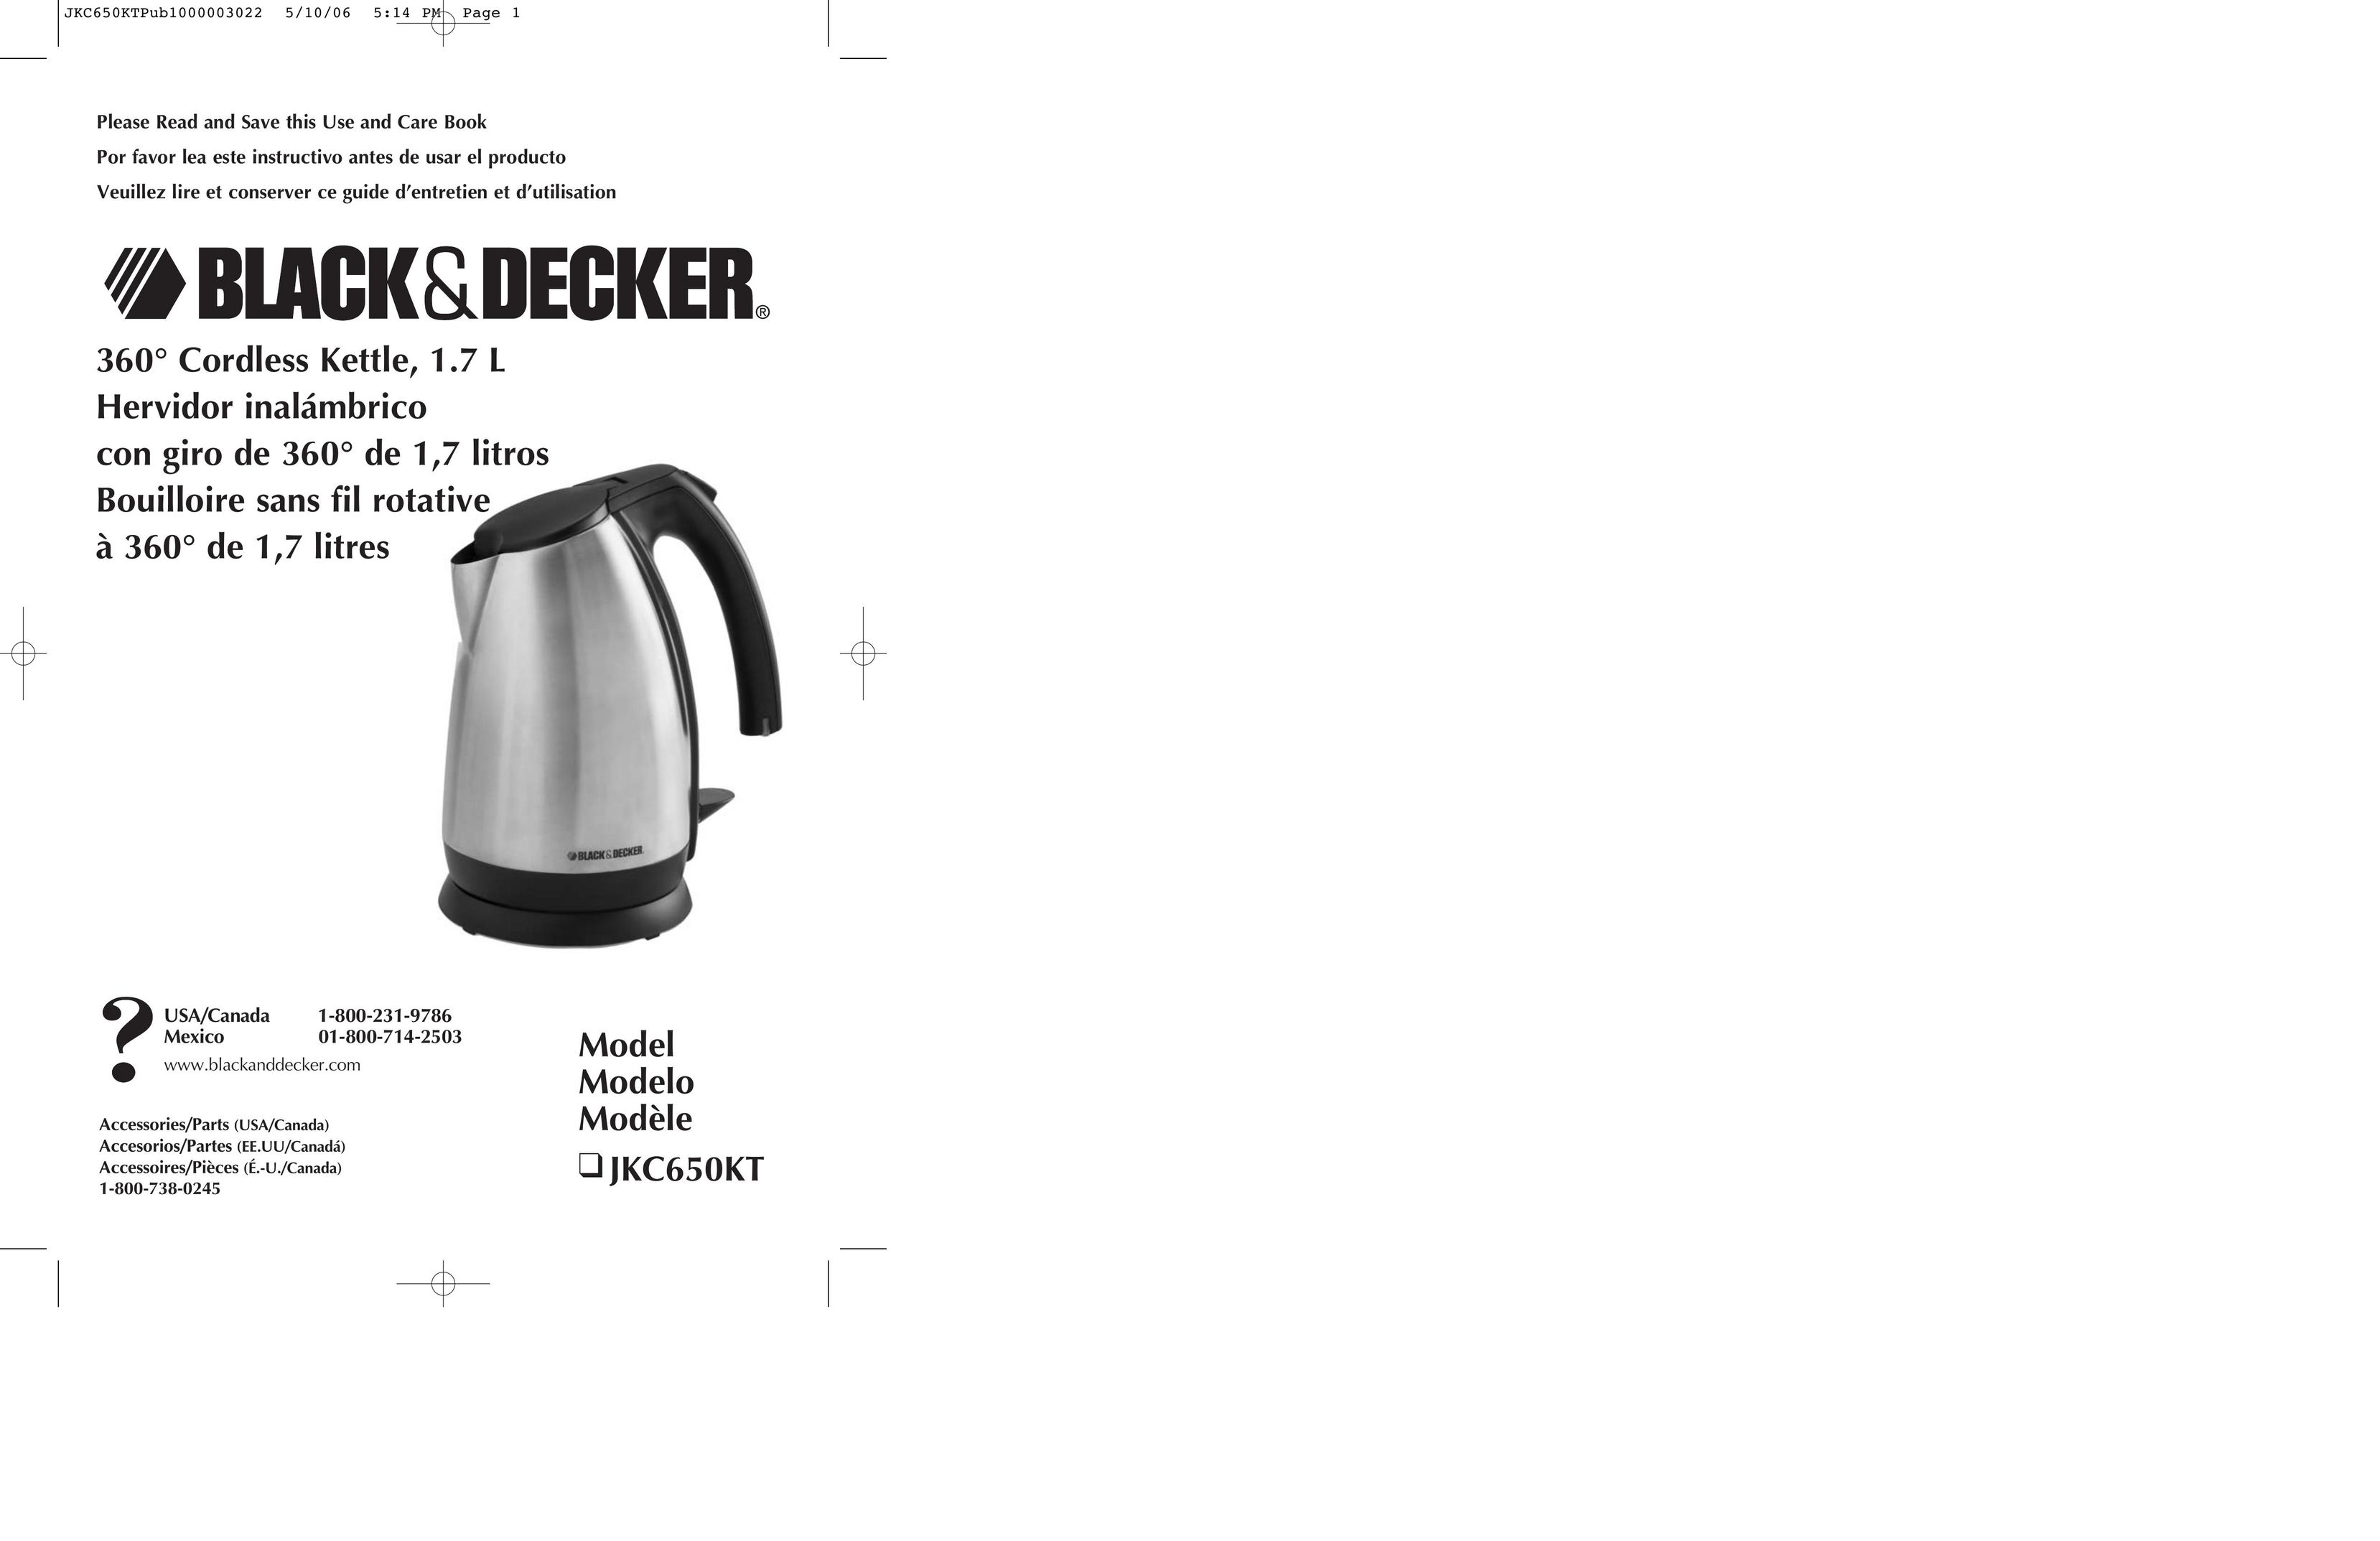 Black & Decker JKC650KT Hot Beverage Maker User Manual